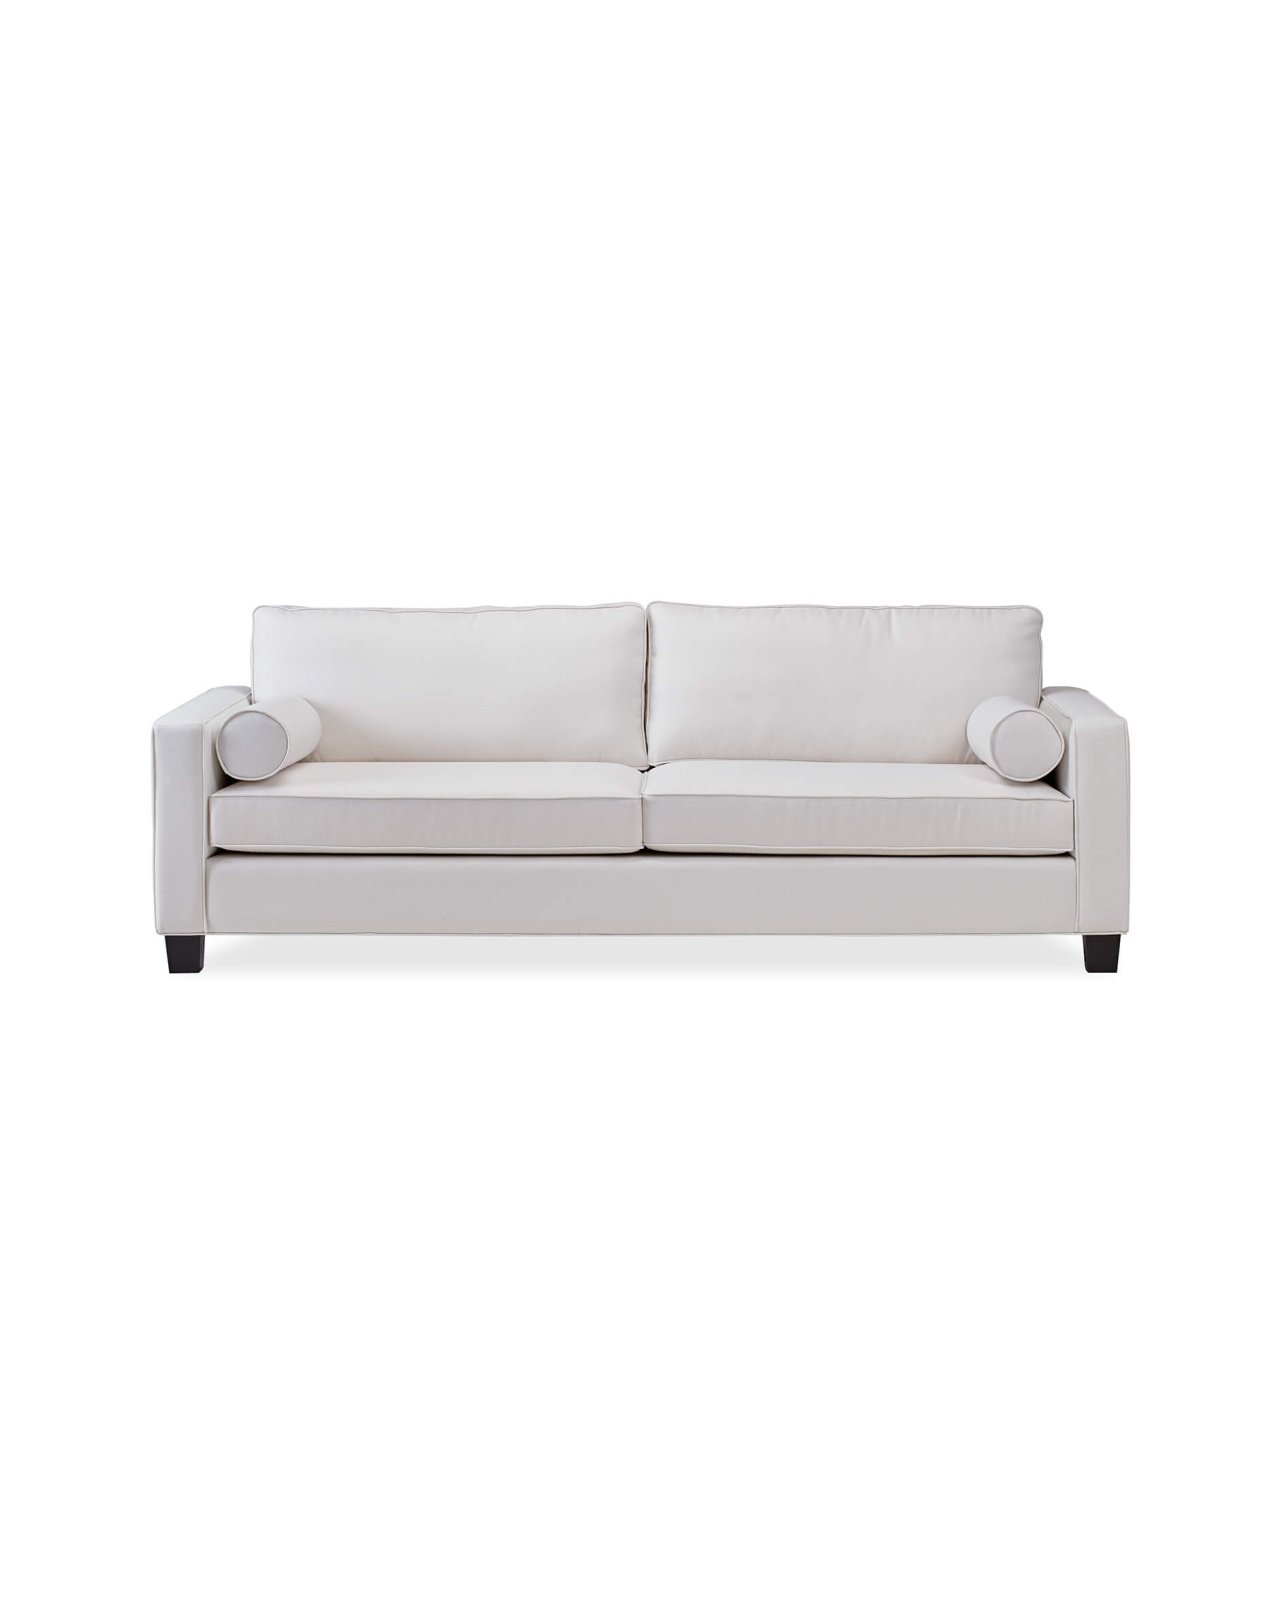 Plaza-sohva, off-white